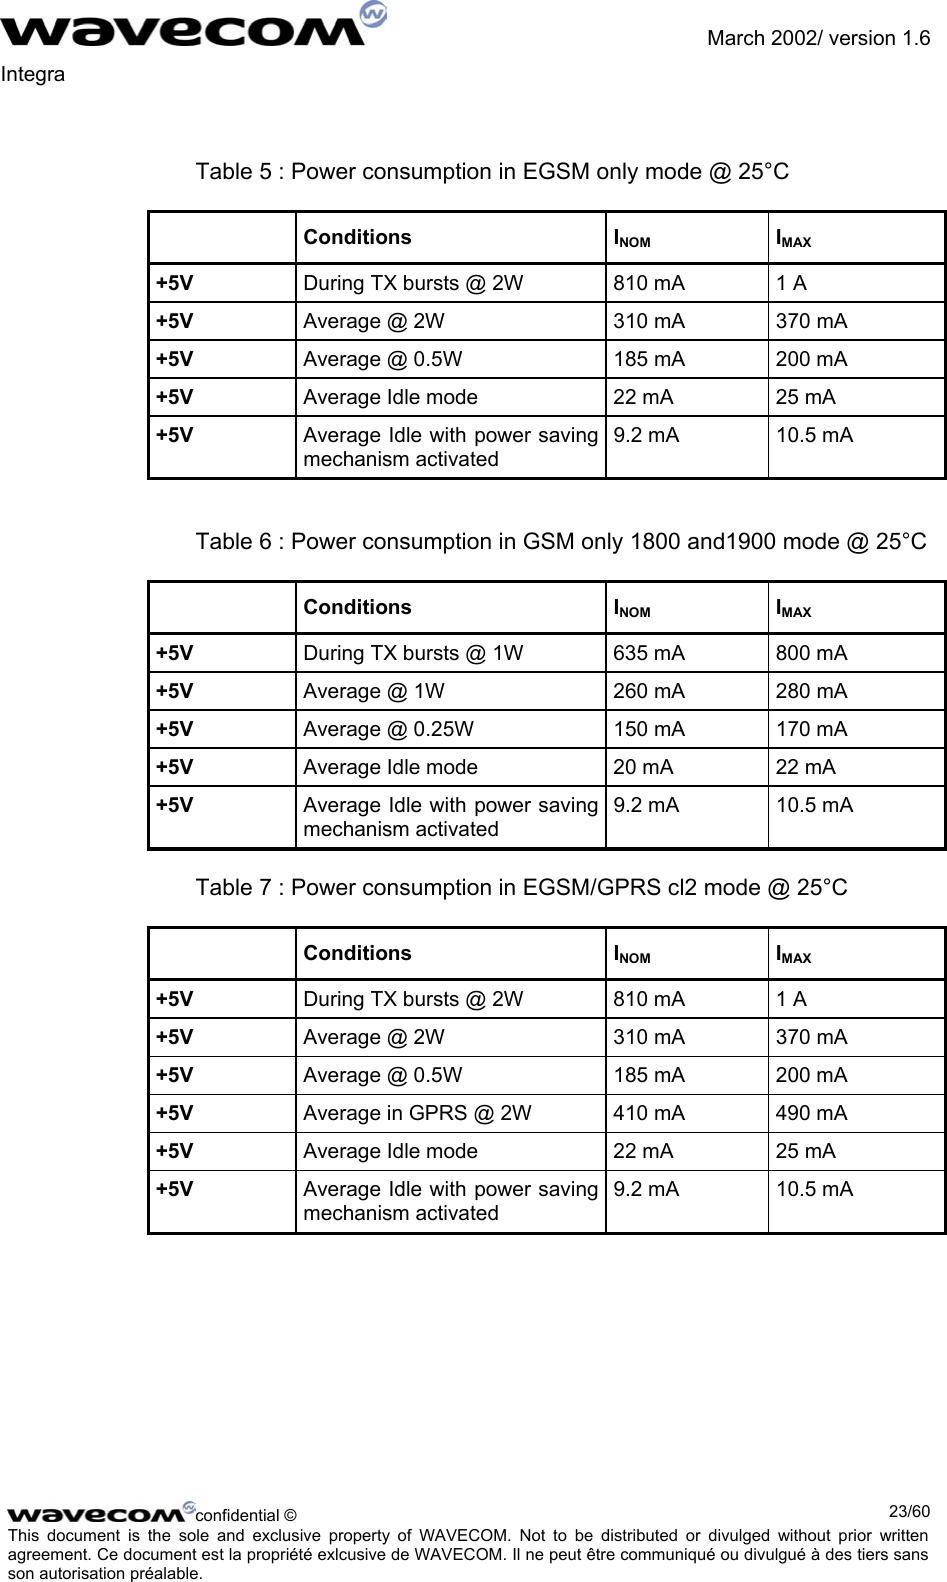               March 2002/ version 1.6 Integra    Table 5 : Power consumption in EGSM only mode @ 25°C  Conditions  INOM IMAX +5V  During TX bursts @ 2W  810 mA  1 A +5V  Average @ 2W  310 mA  370 mA +5V  Average @ 0.5W  185 mA  200 mA +5V  Average Idle mode  22 mA  25 mA +5V  Average Idle with power saving mechanism activated 9.2 mA  10.5 mA   Table 6 : Power consumption in GSM only 1800 and1900 mode @ 25°C  Conditions  INOM IMAX +5V  During TX bursts @ 1W  635 mA  800 mA +5V  Average @ 1W  260 mA  280 mA +5V  Average @ 0.25W  150 mA  170 mA +5V  Average Idle mode  20 mA  22 mA +5V  Average Idle with power saving mechanism activated 9.2 mA  10.5 mA  Table 7 : Power consumption in EGSM/GPRS cl2 mode @ 25°C  Conditions  INOM IMAX +5V  During TX bursts @ 2W  810 mA  1 A +5V  Average @ 2W  310 mA  370 mA +5V  Average @ 0.5W  185 mA  200 mA +5V  Average in GPRS @ 2W  410 mA  490 mA +5V  Average Idle mode  22 mA  25 mA +5V  Average Idle with power saving mechanism activated 9.2 mA  10.5 mA  confidential ©  23/60This document is the sole and exclusive property of WAVECOM. Not to be distributed or divulged without prior written agreement. Ce document est la propriété exlcusive de WAVECOM. Il ne peut être communiqué ou divulgué à des tiers sans son autorisation préalable.  